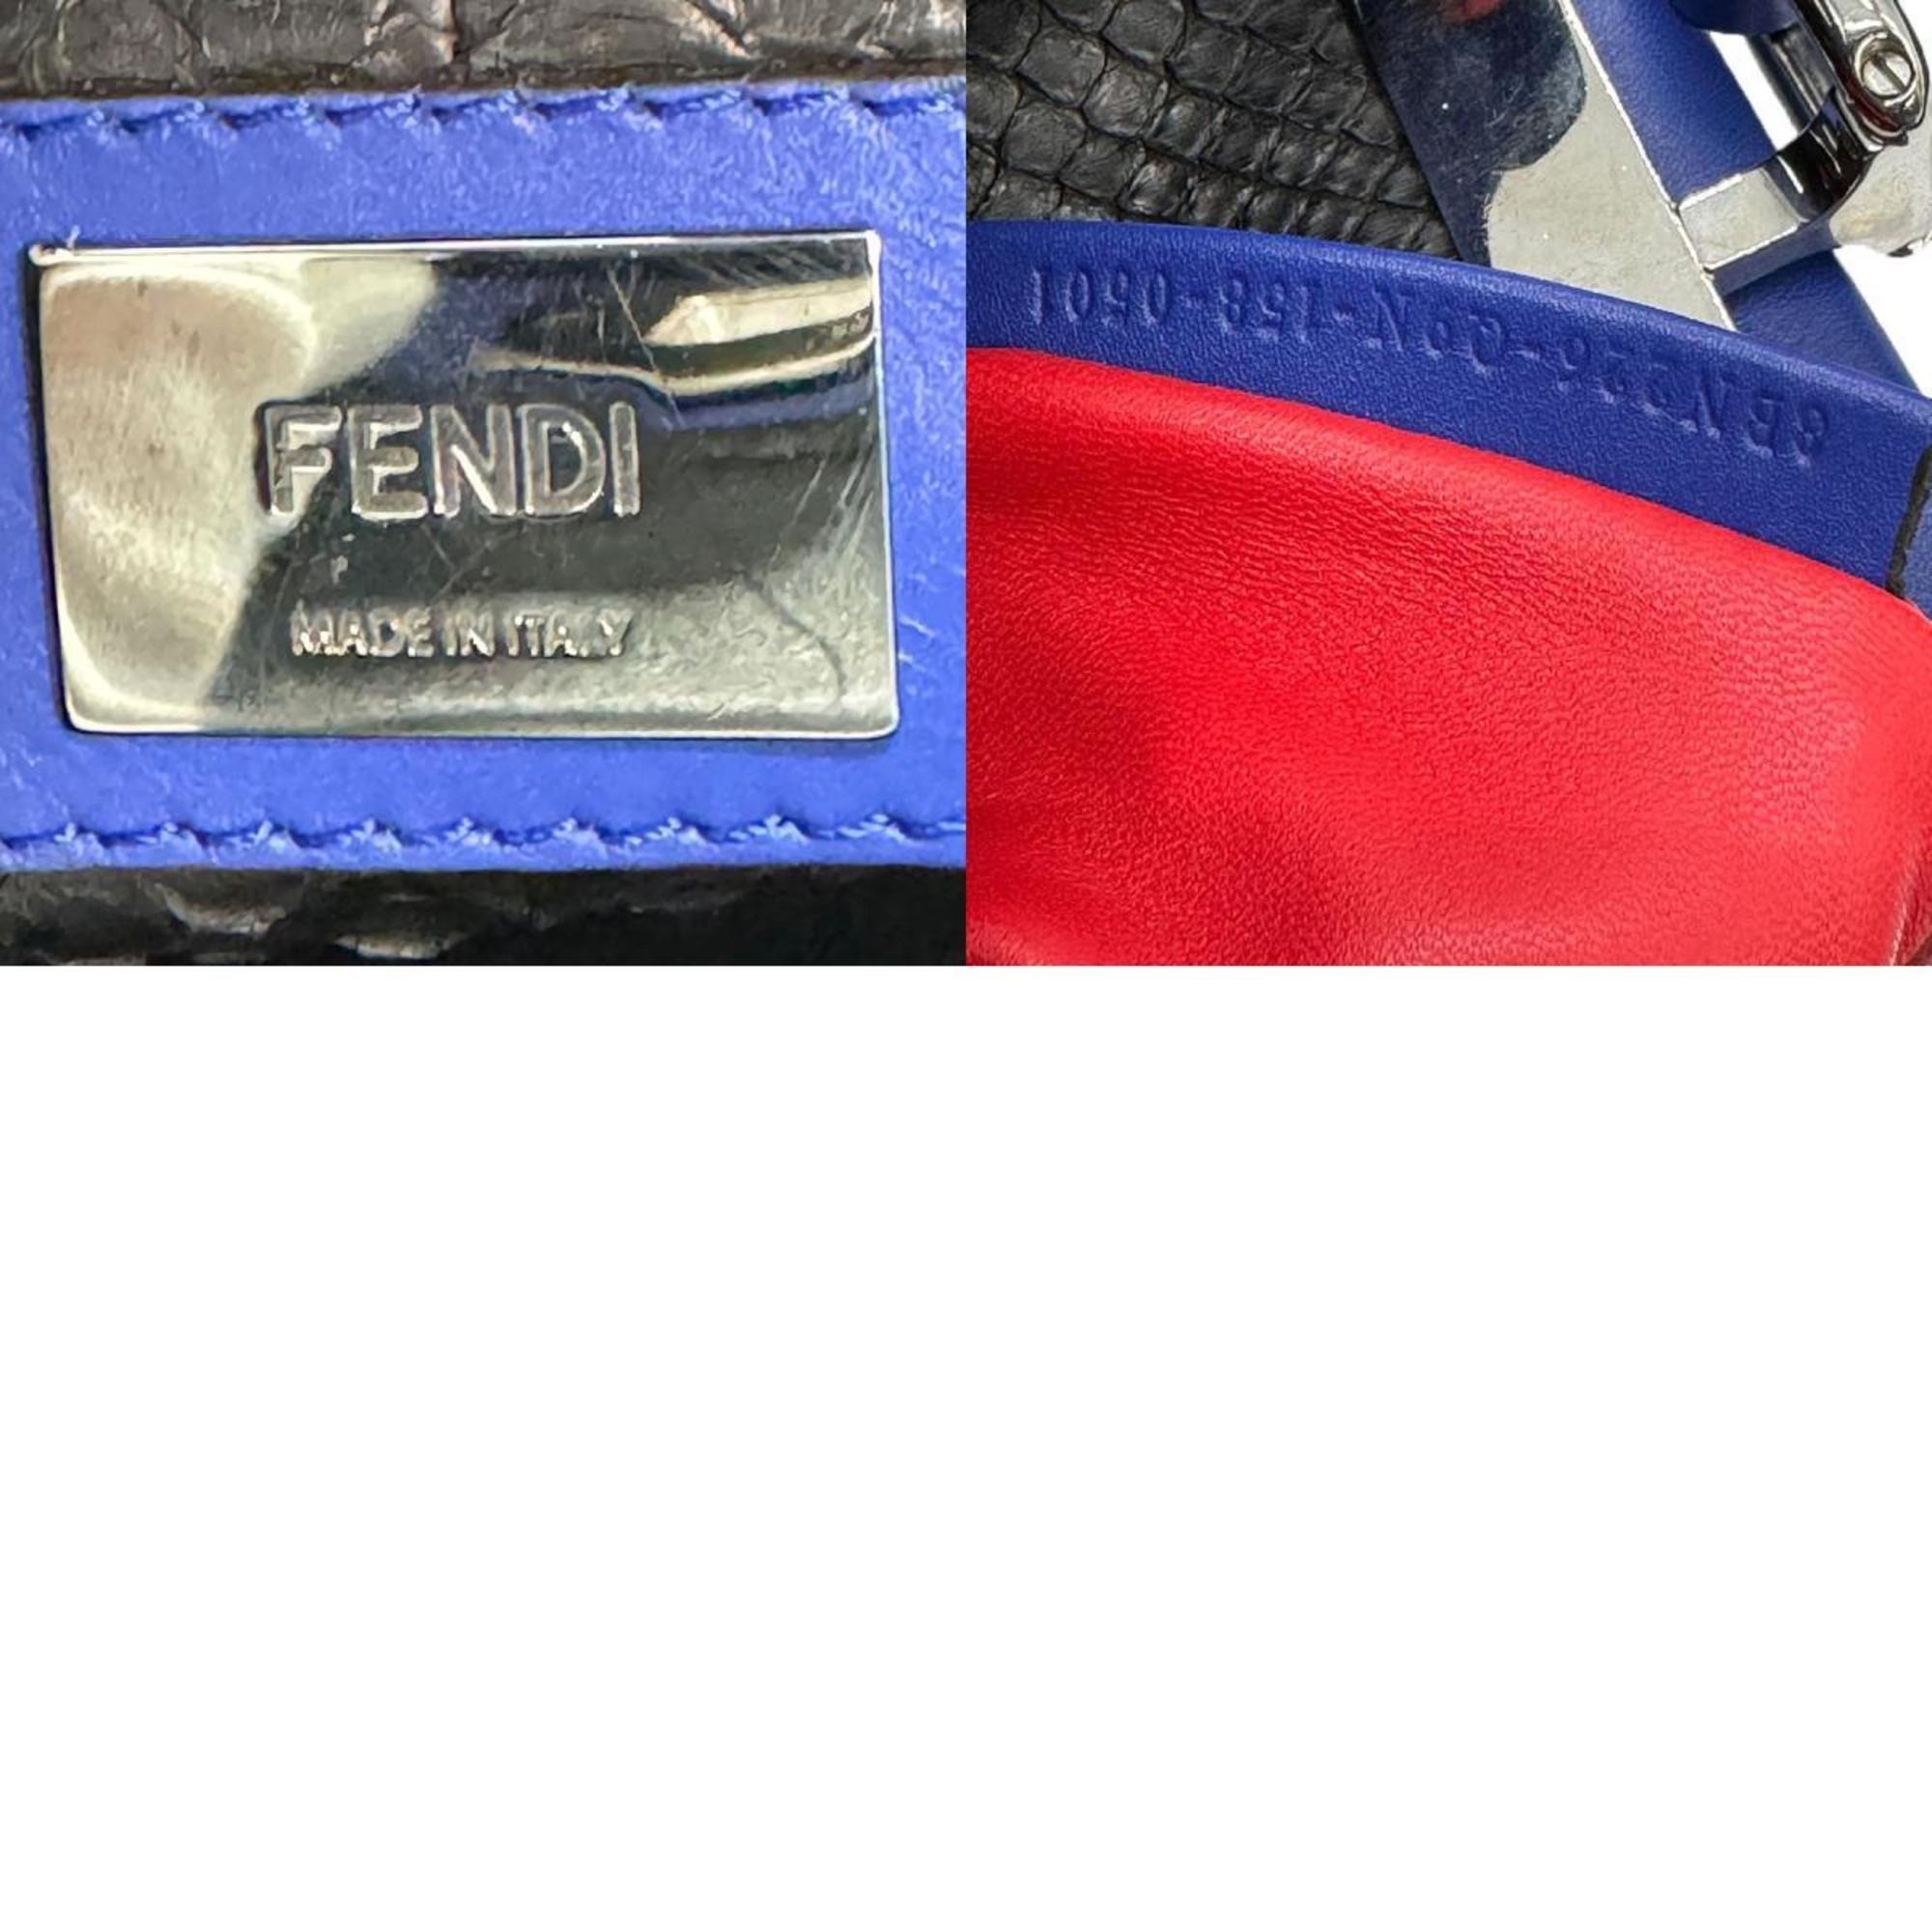 FENDI Peekaboo Bugs Monster Eye Regular Leather Handbag Blue Women's 8BN226-Q9N z0666